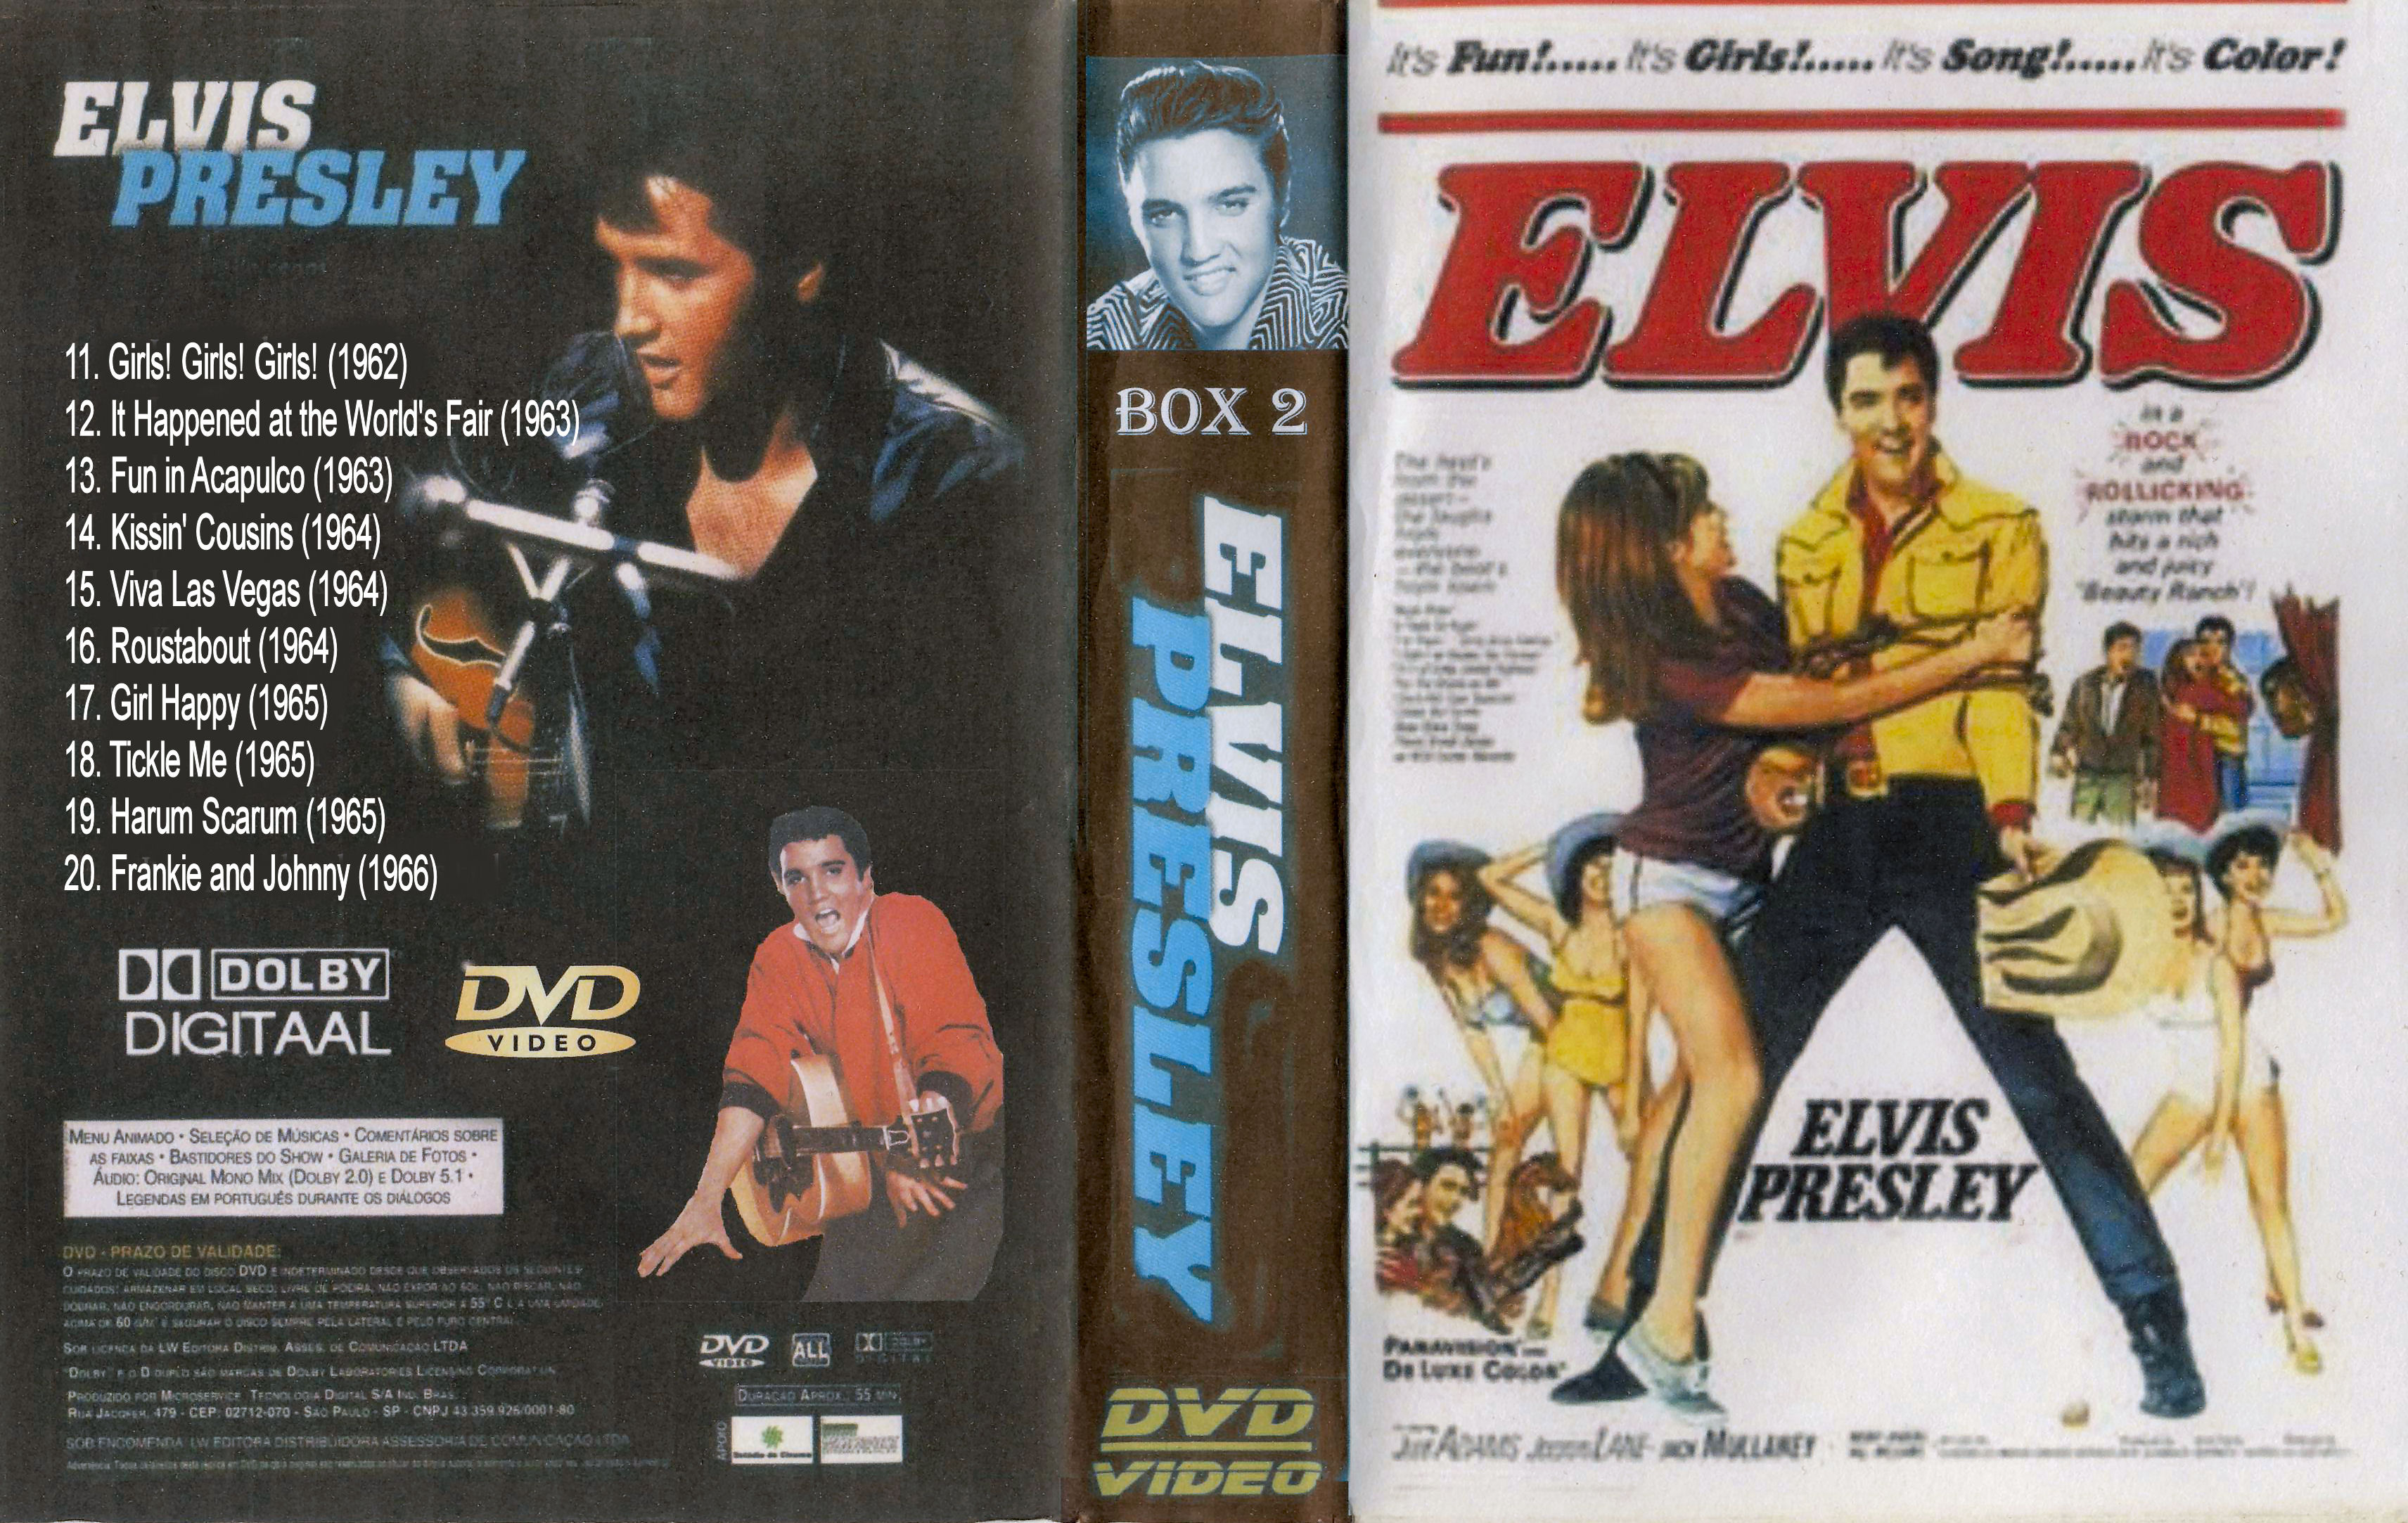 Elvis Presley Collectie ( 17. Girl Happy (1965) DvD 17 van 31